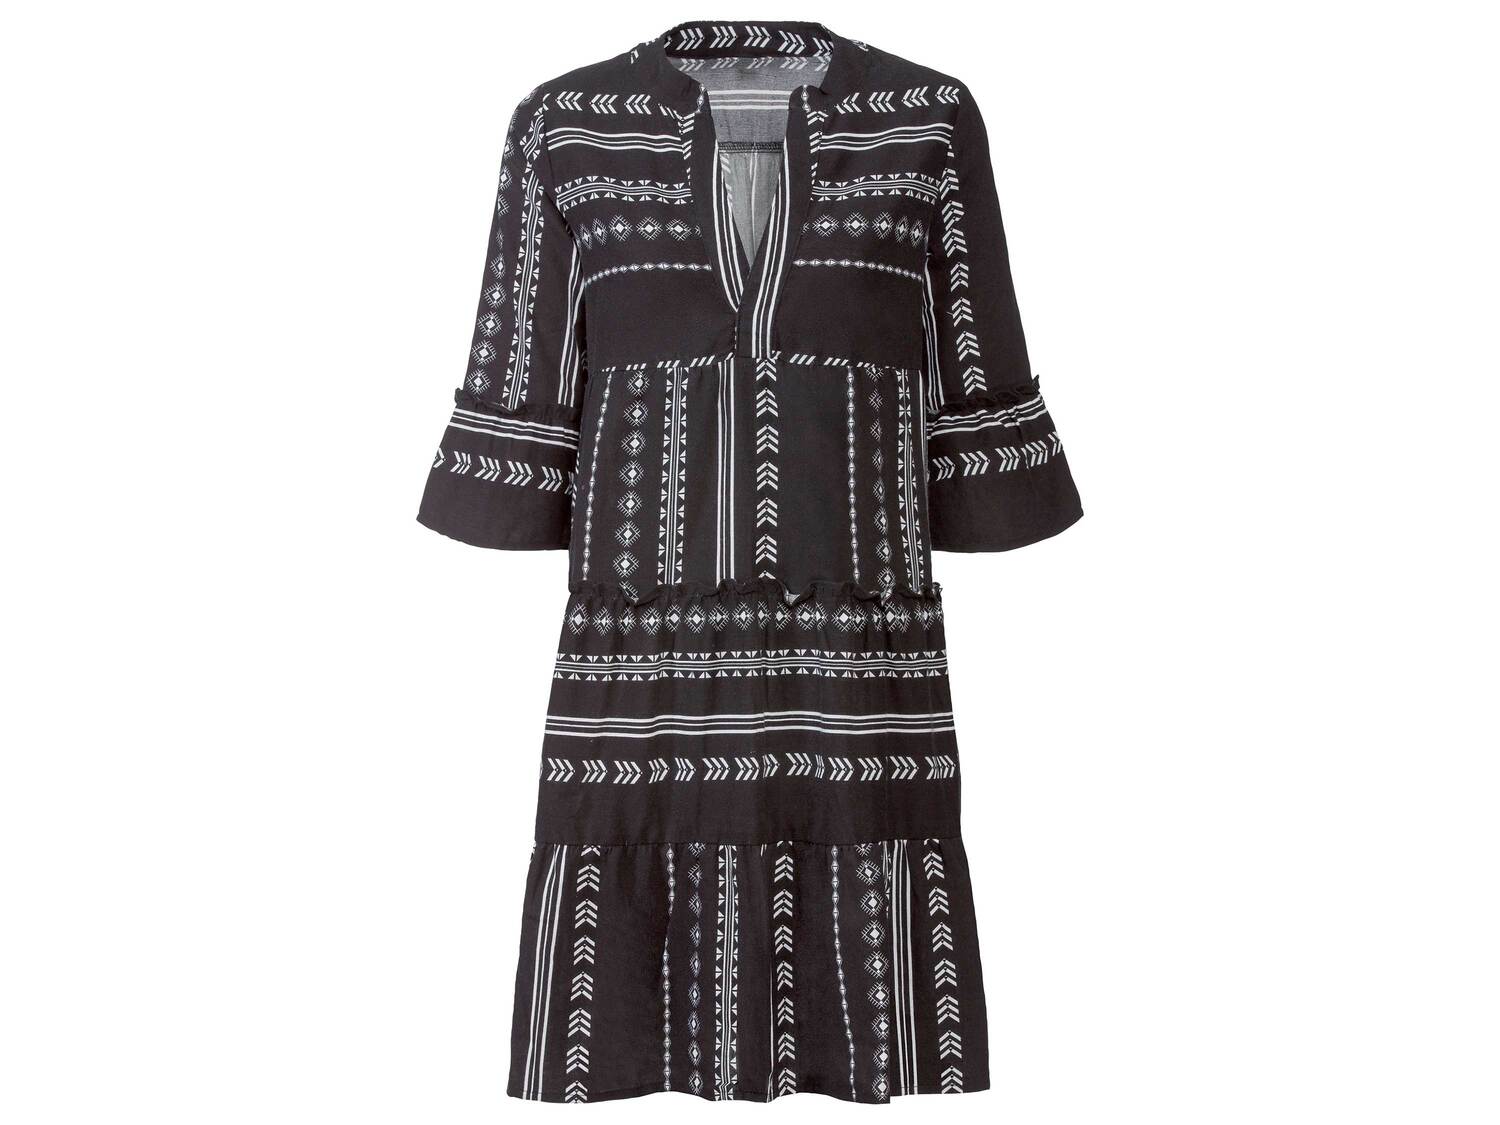 Robe tunique , le prix 9.99 € 
- Du S au XL selon modèle.
- Ex. 100 % coton
Caractéristiques

- ...